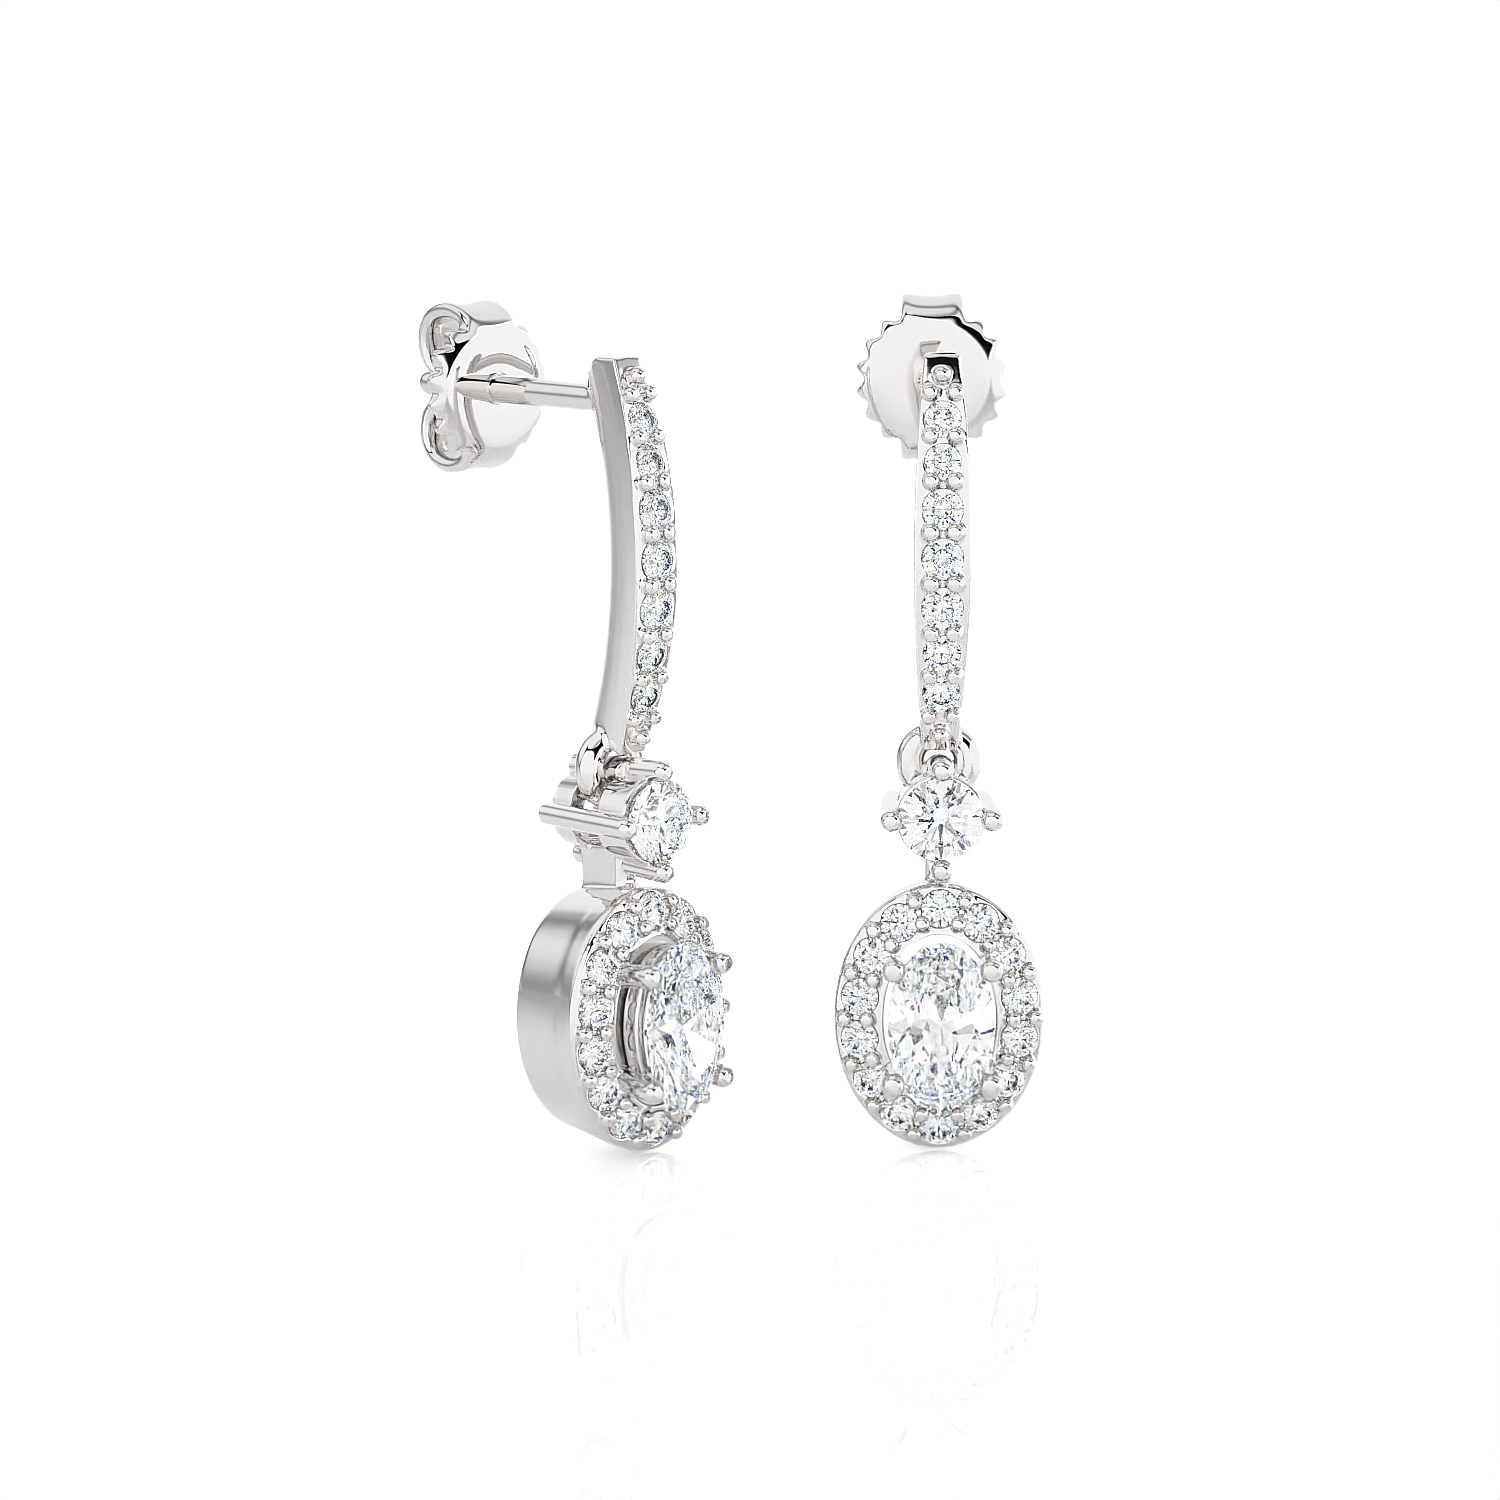 1/2 ctw Oval Lab Grown Diamond Drop Earrings